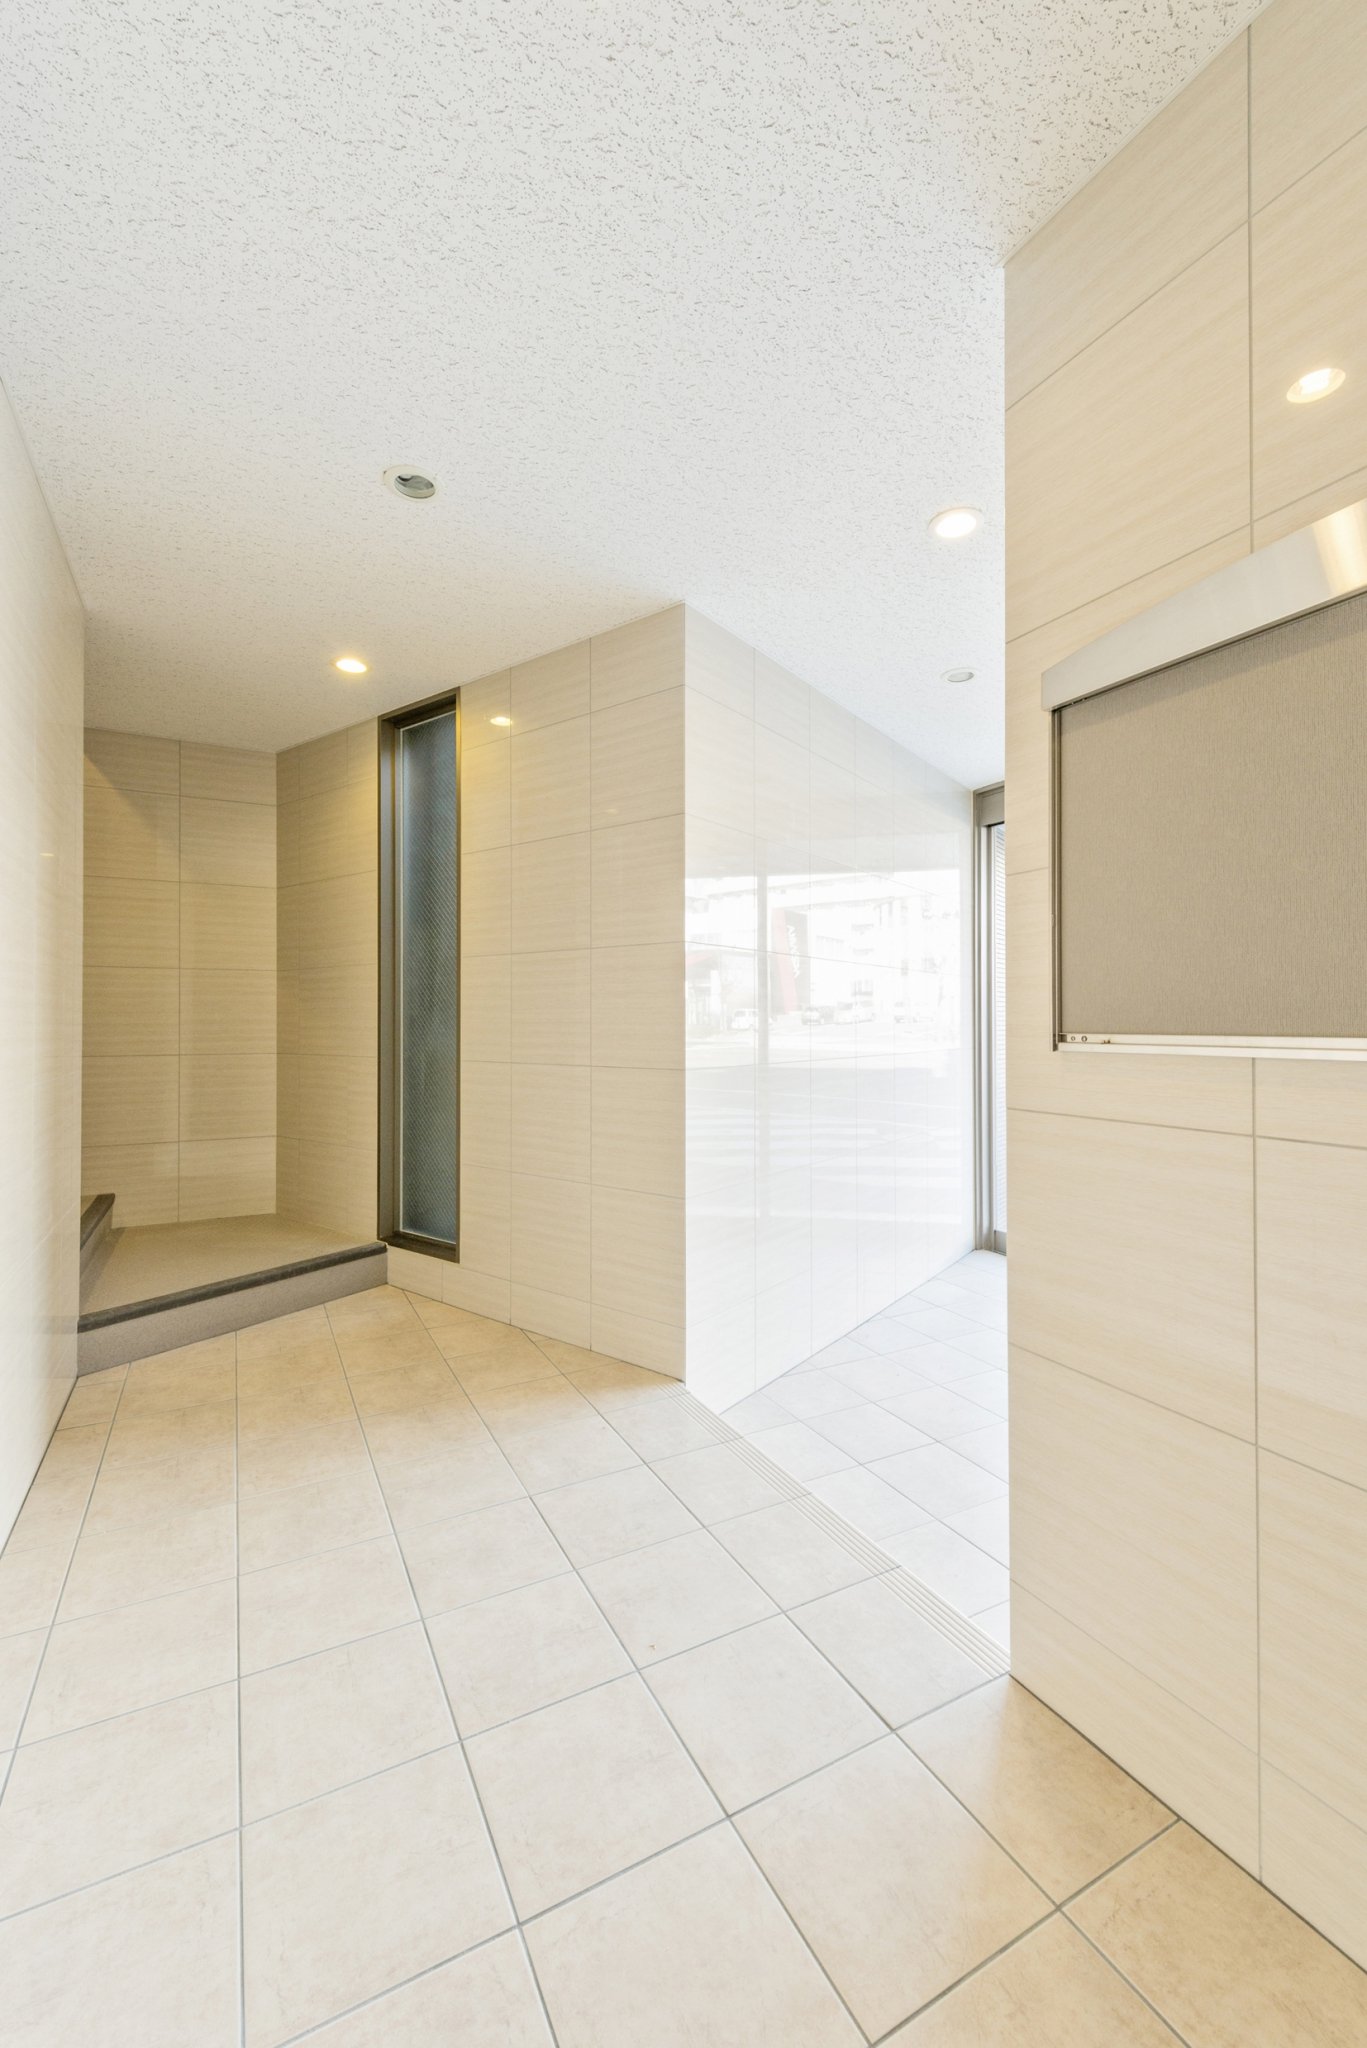 名古屋市名東区の賃貸マンションの光沢のあるタイルの付いた高級感のあるエントランスホール